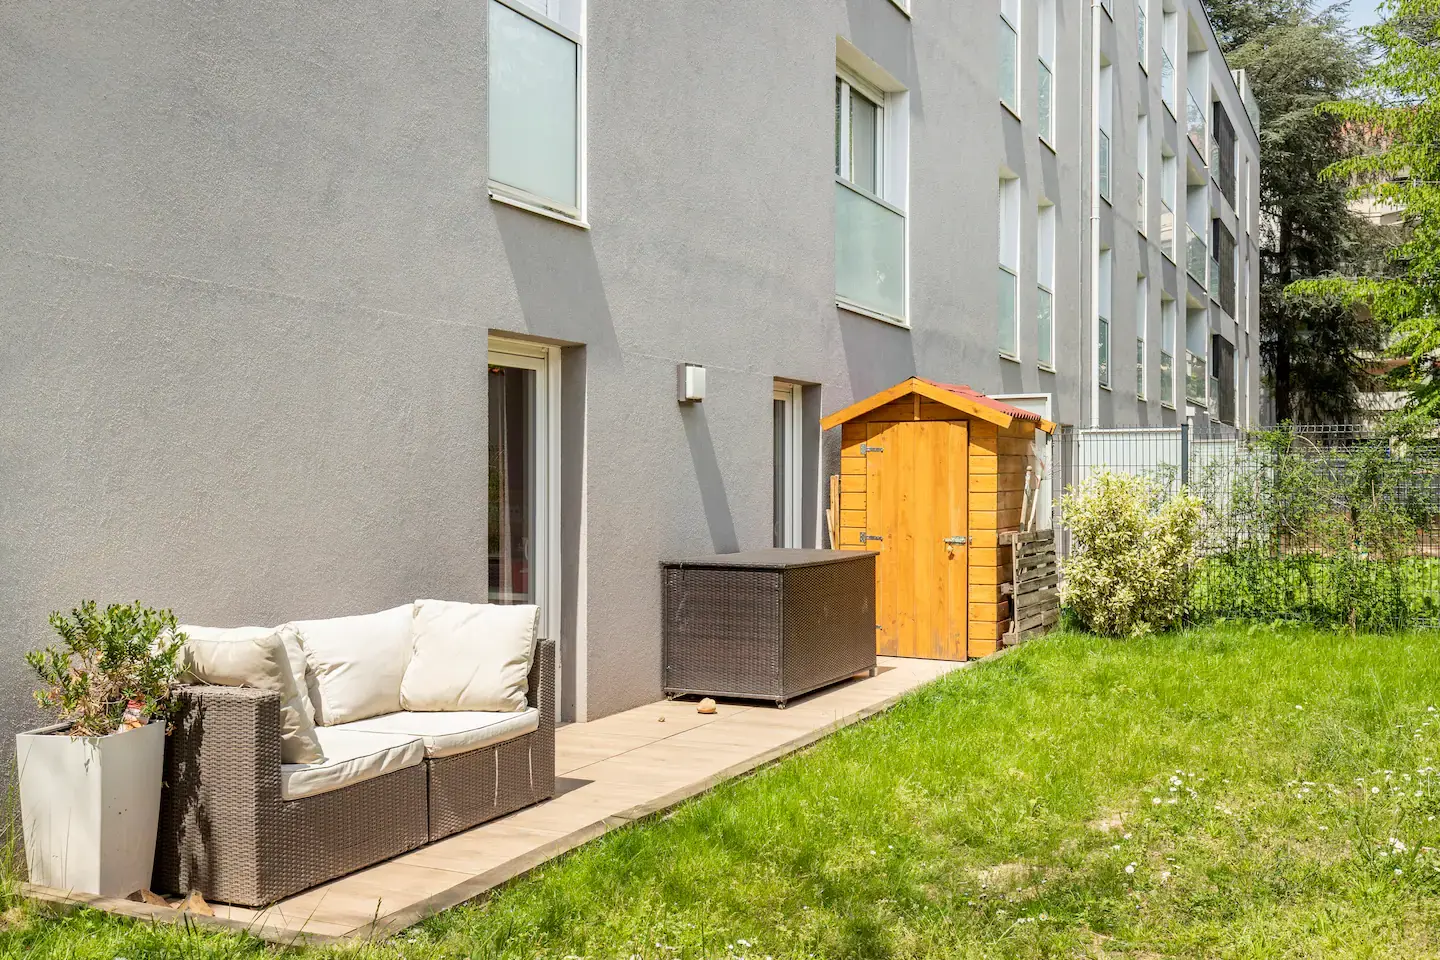 Hôte GreenGo: Appartement avec jardin de 160 m² dans un quartier calme, avec nombreux commerces et transports - Image 13